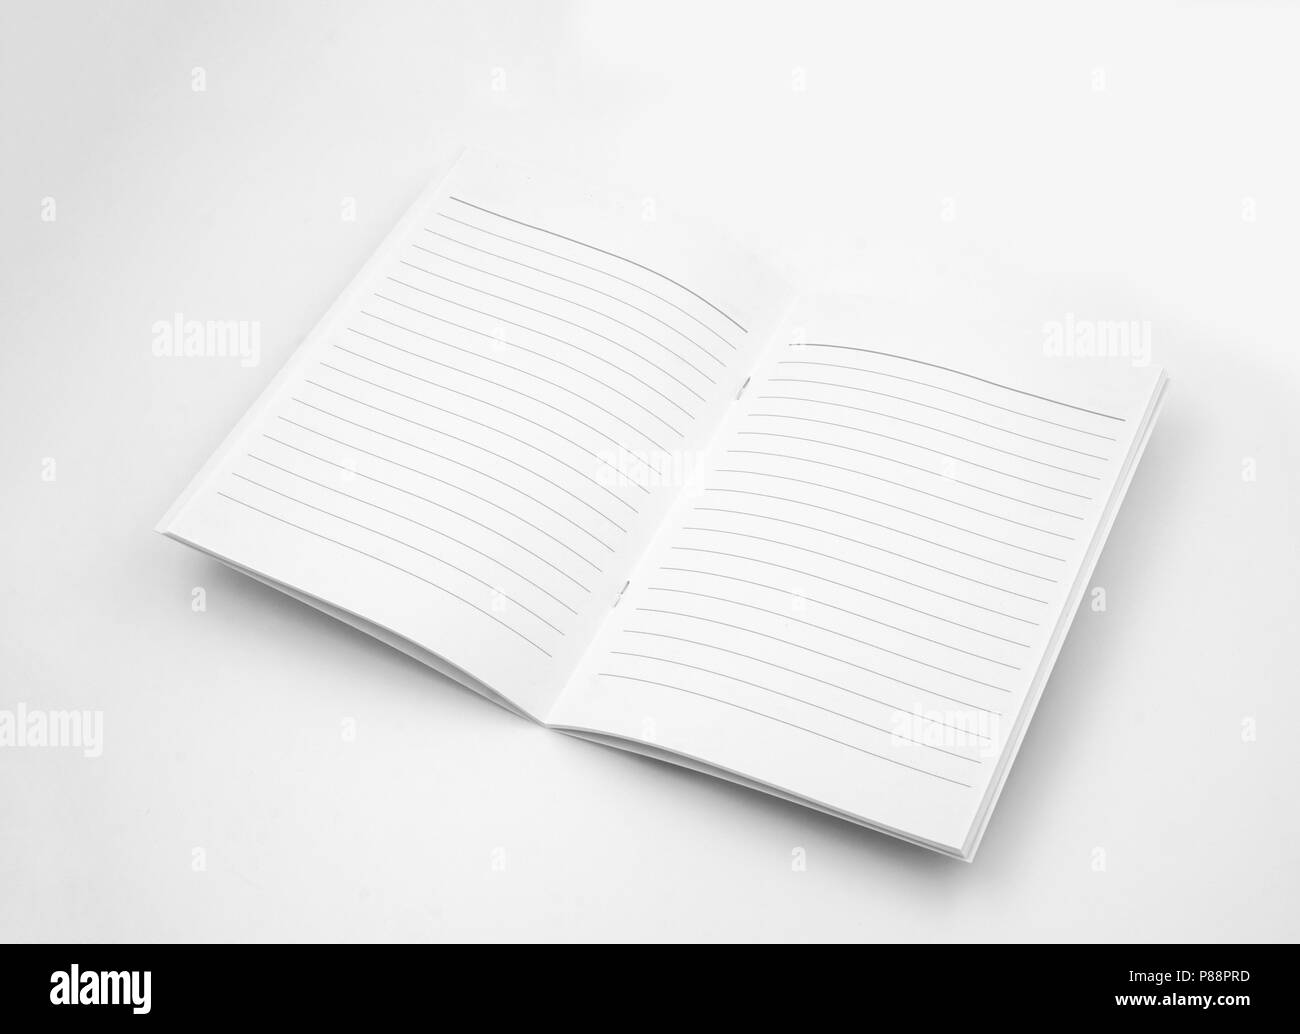 Vuoto libretto aperto su uno sfondo bianco Foto Stock